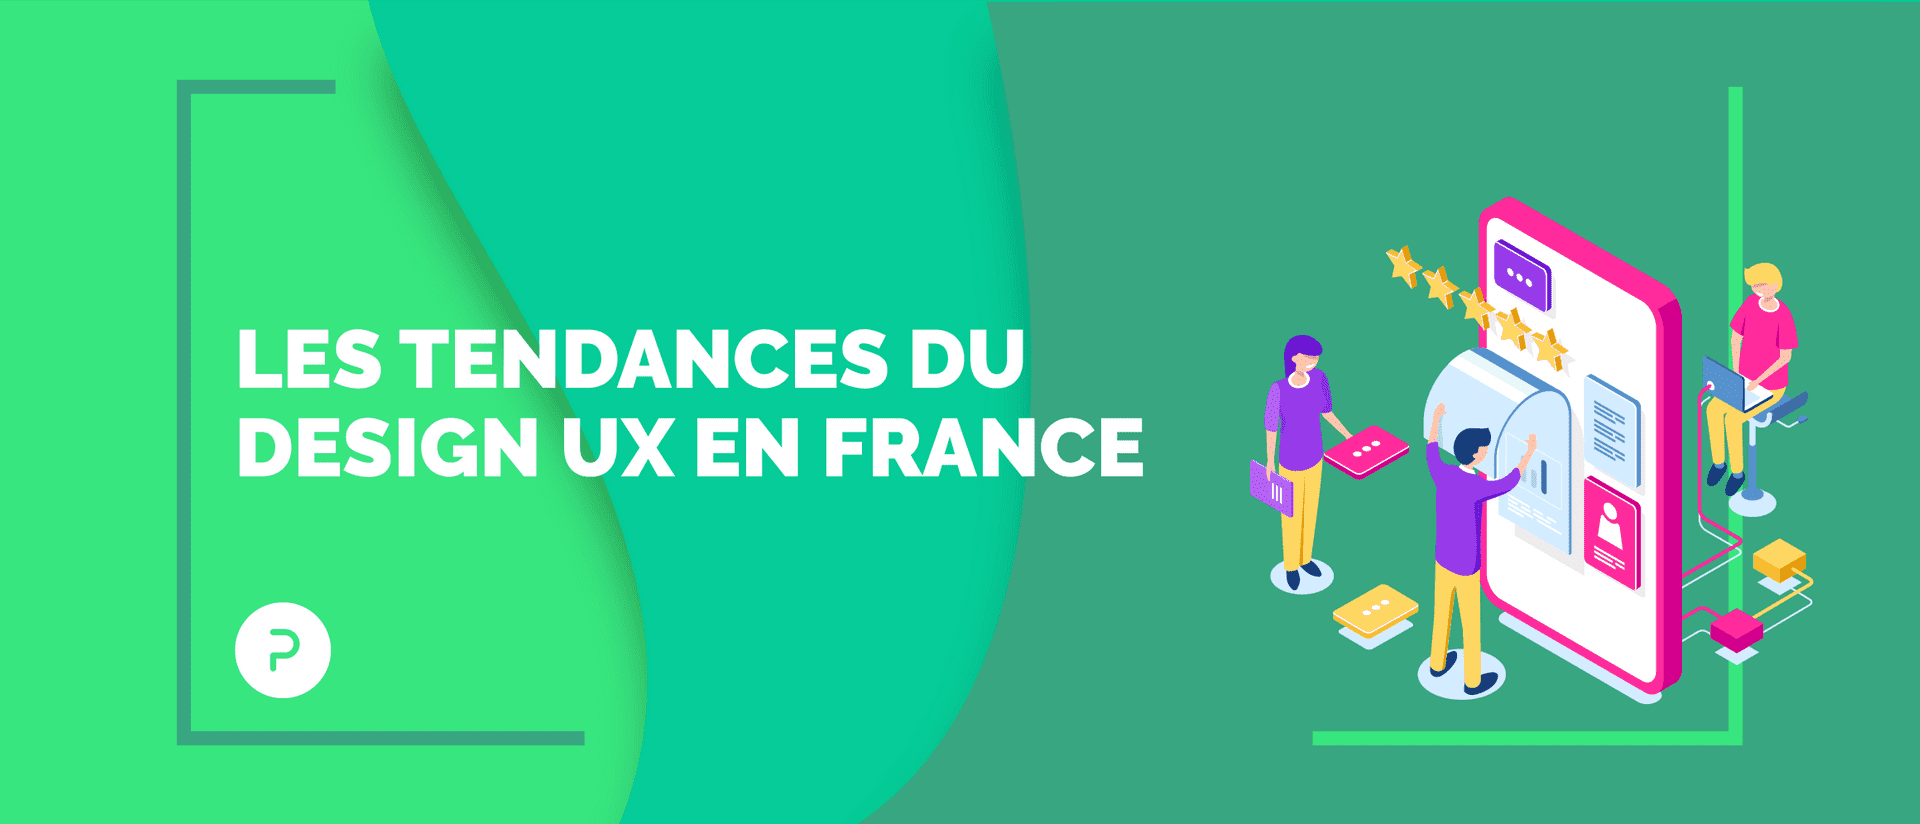 Jeux, éthique et voix : les tendances du design UX en France